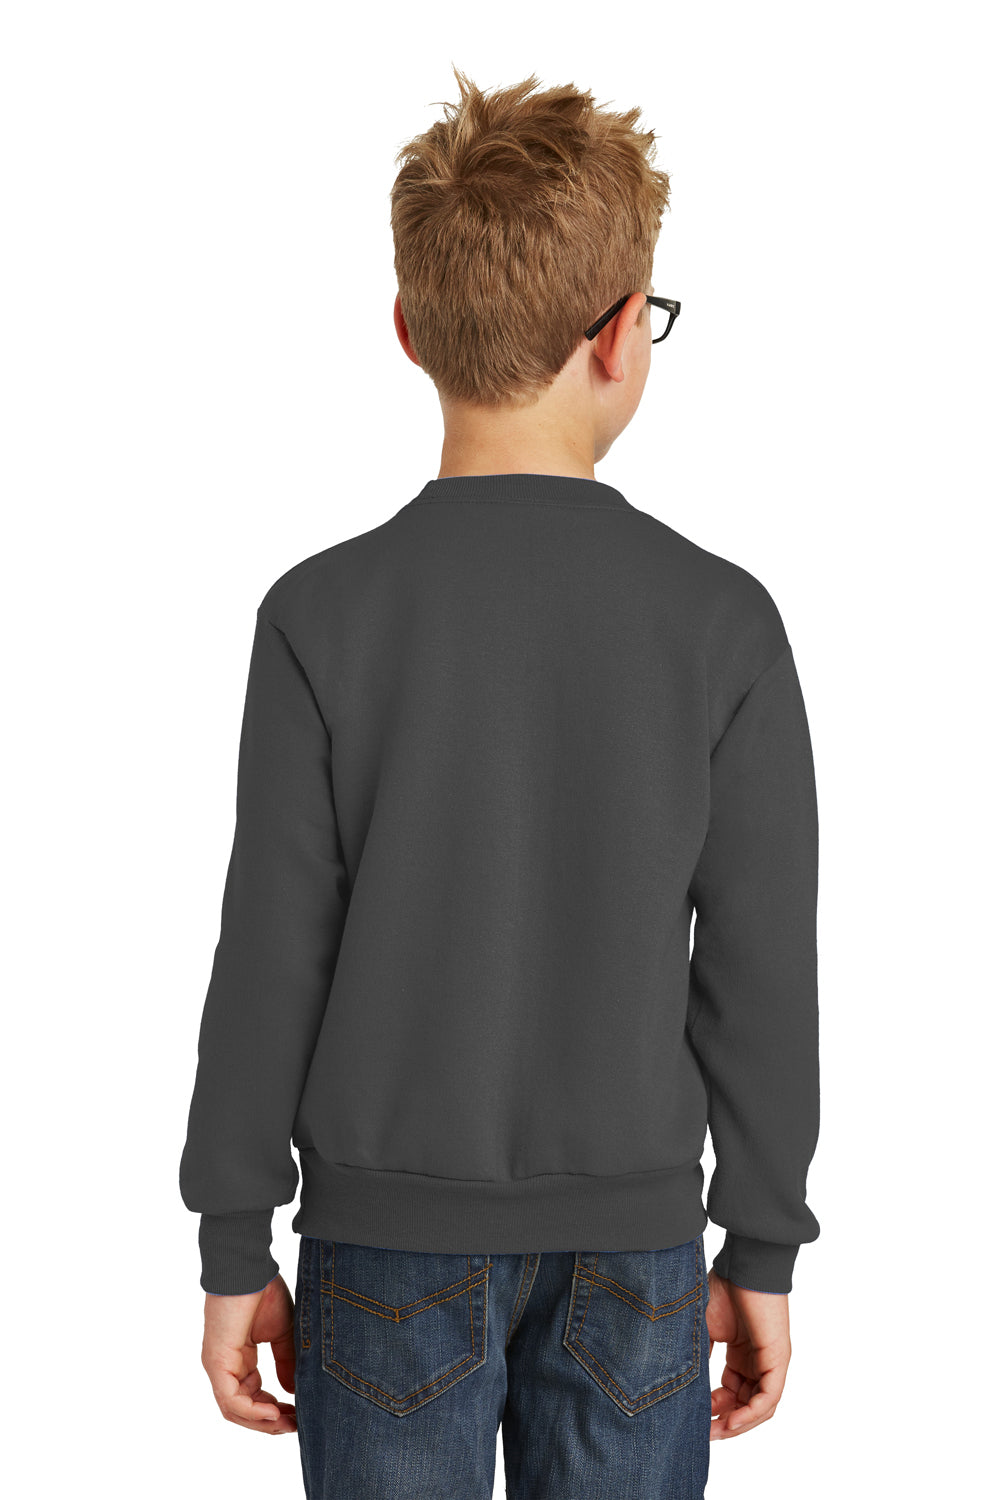 Port & Company PC90Y Youth Core Fleece Crewneck Sweatshirt Charcoal Grey Back